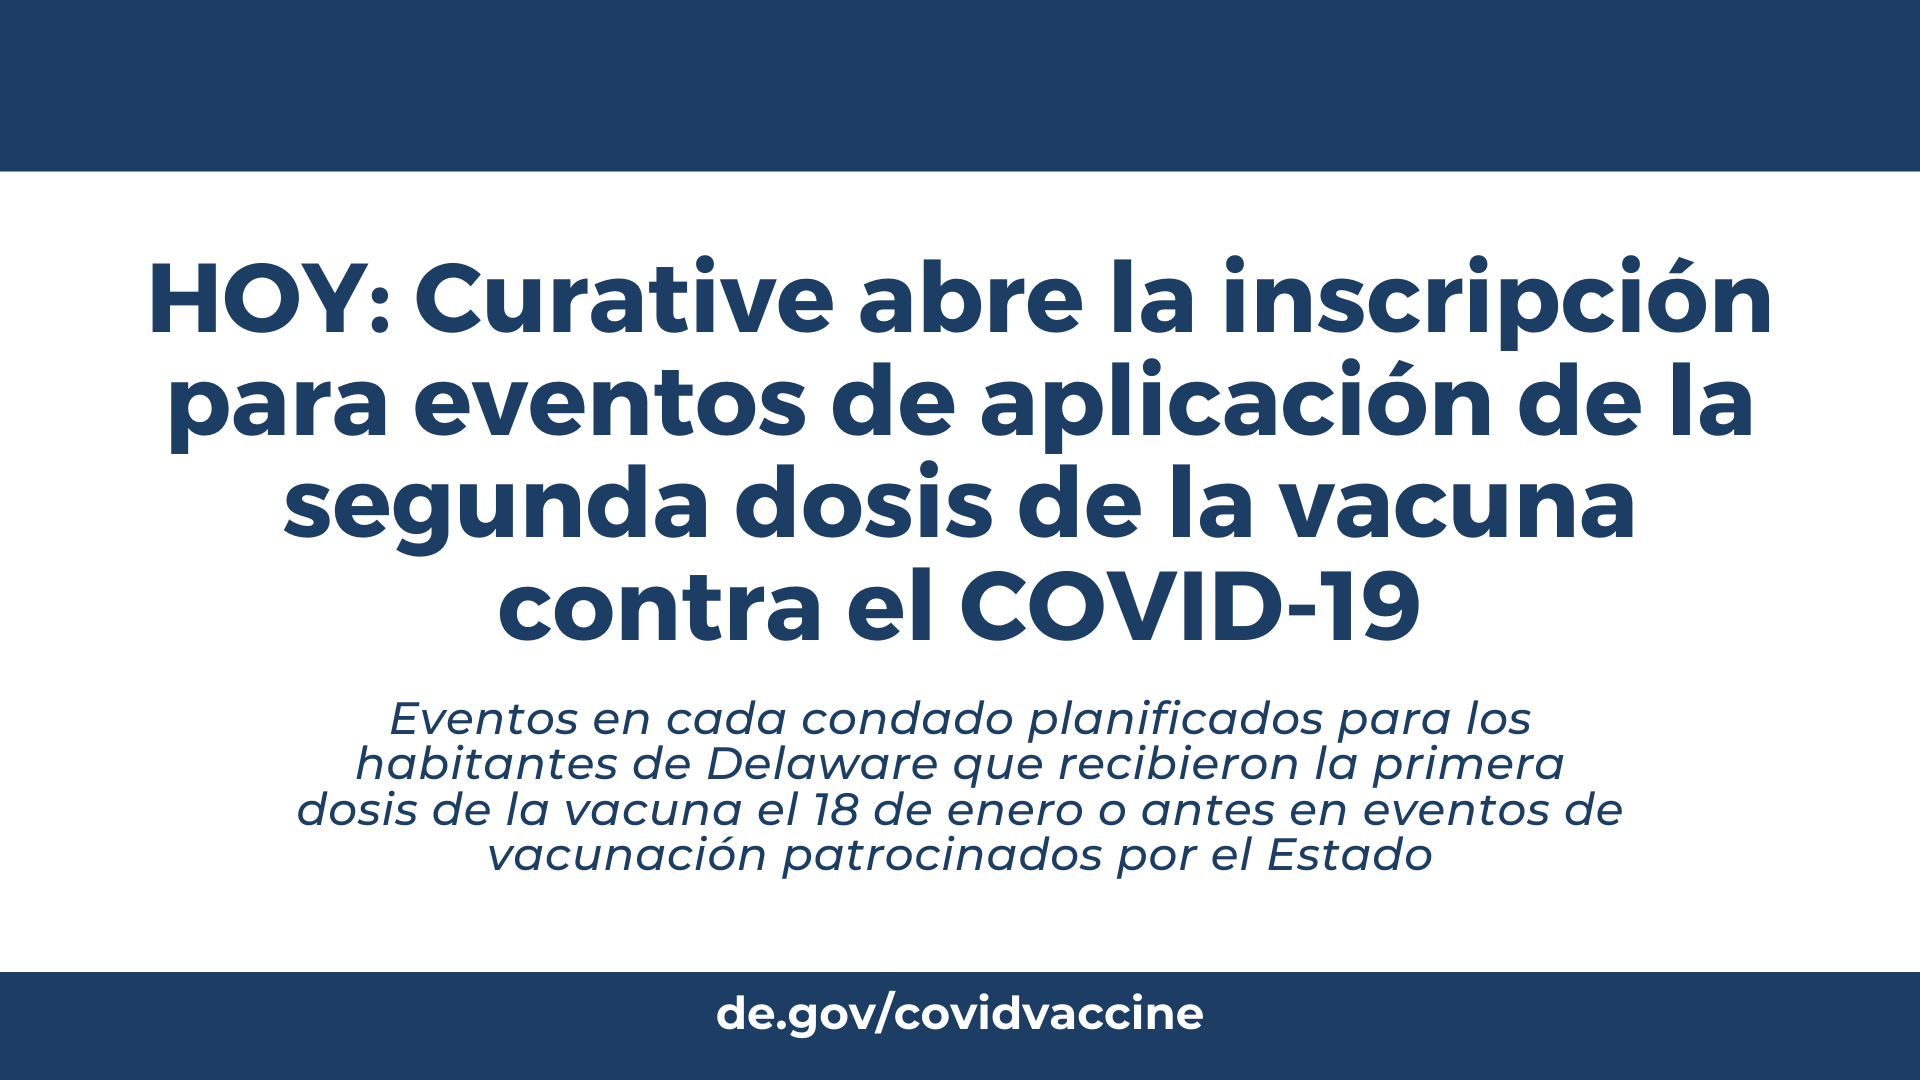 HOY: Curative abre la inscripción para eventos de aplicación de la segunda dosis de la vacuna contra el COVID-19